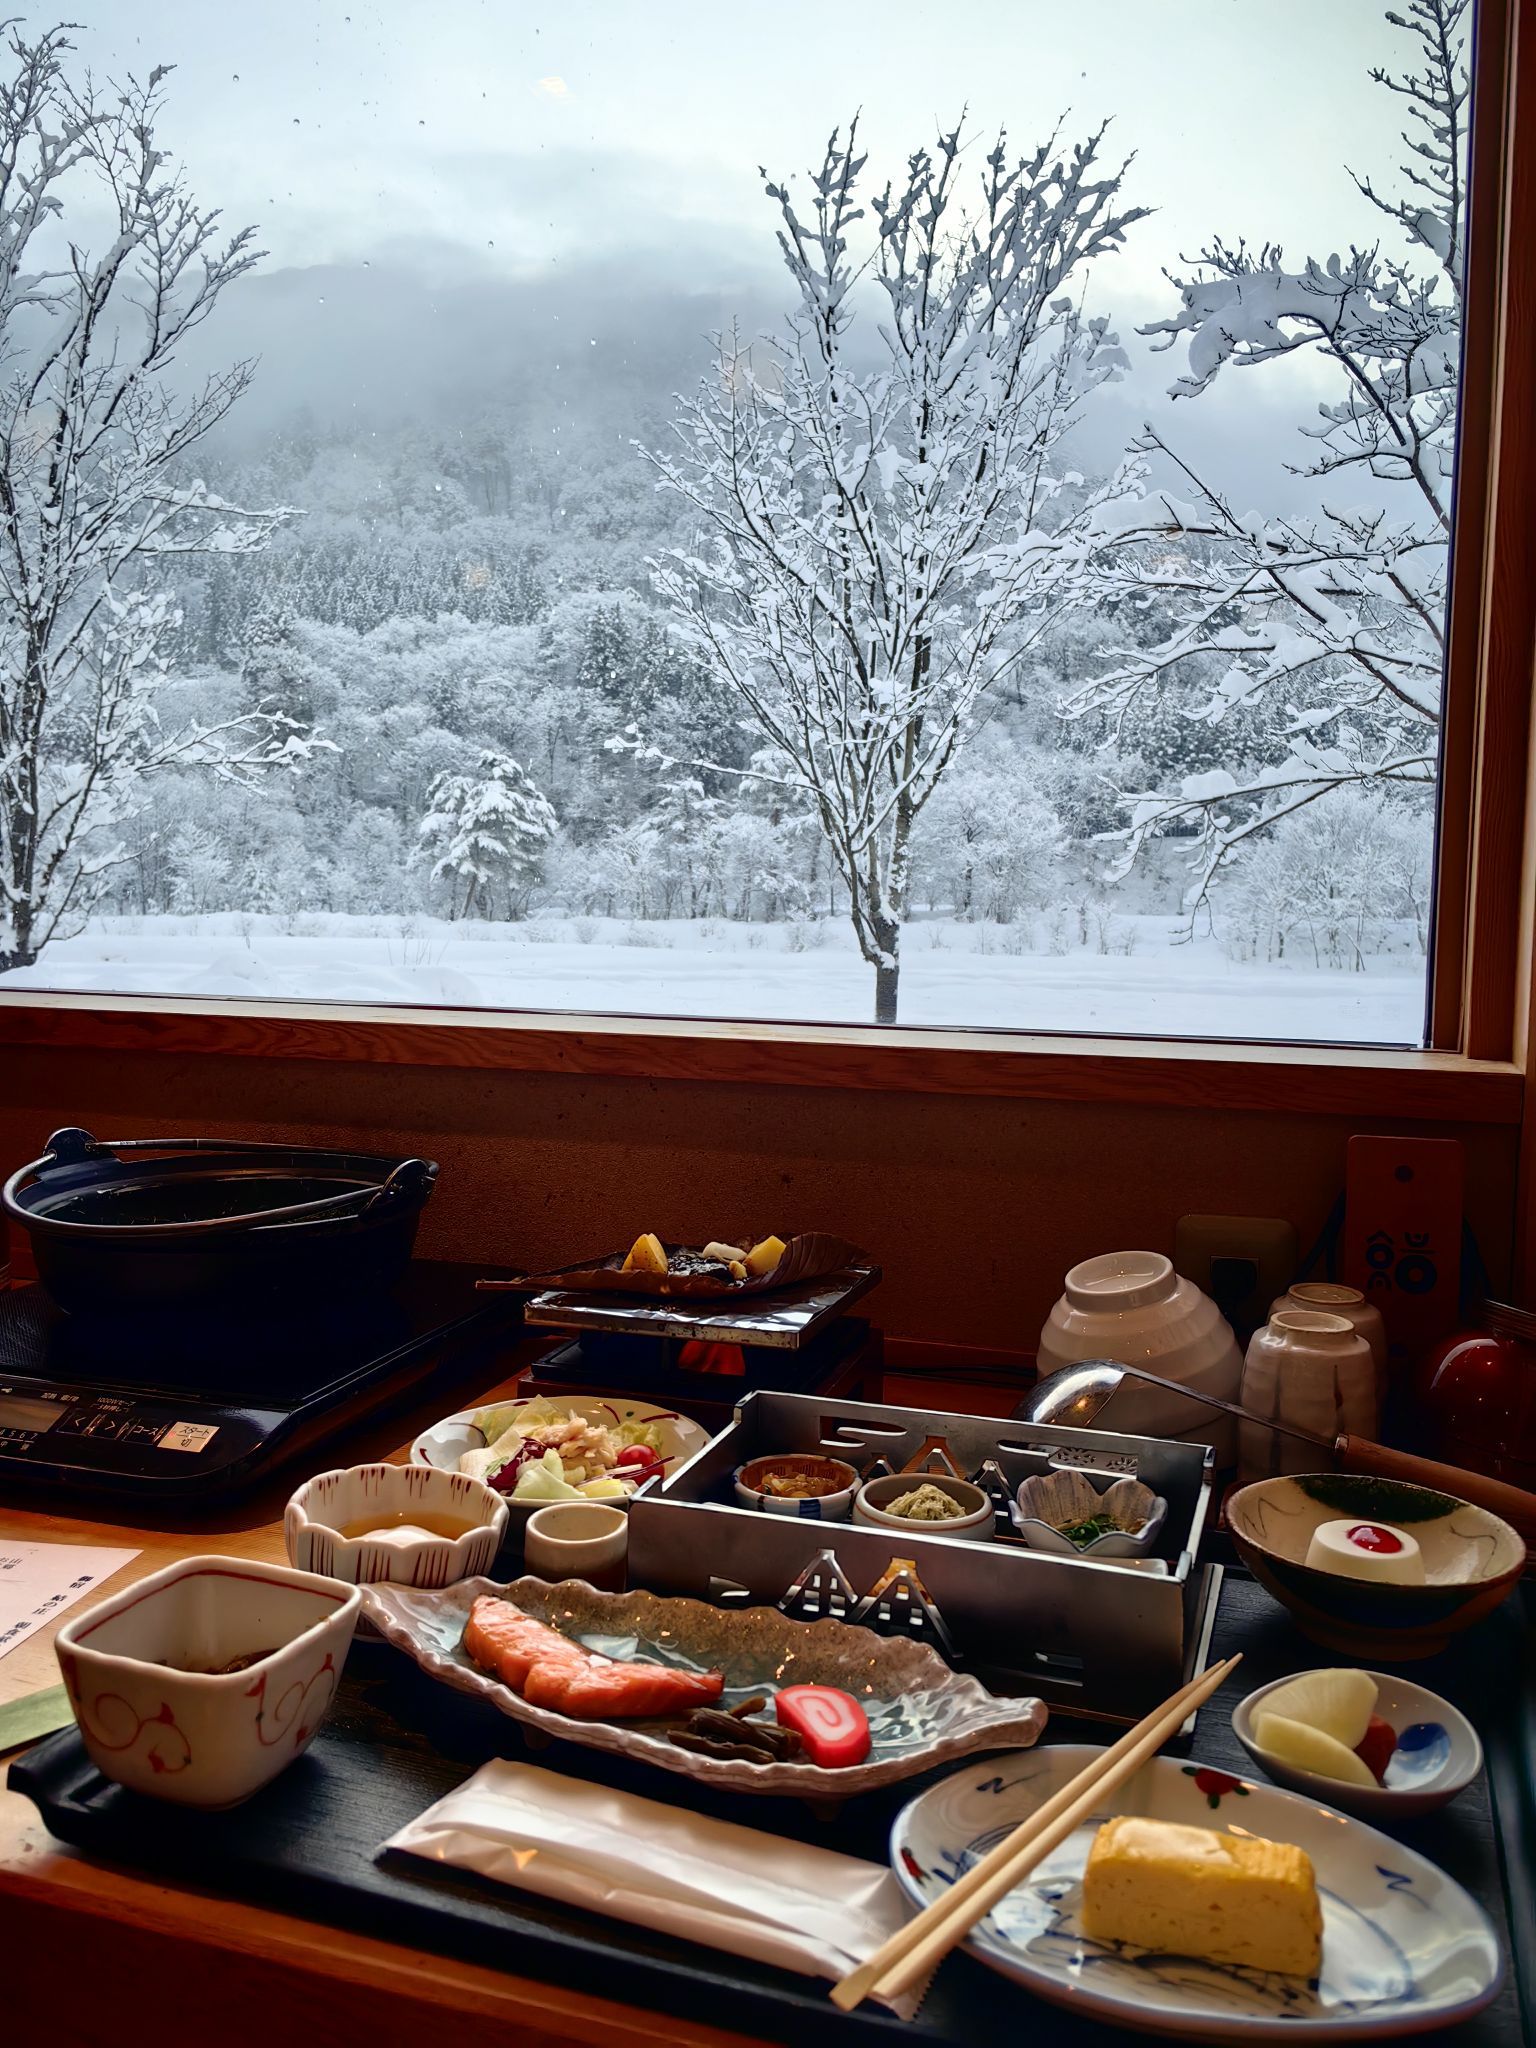 日式酒店，环境非常好，晚餐和早餐上图了。可以一边吃饭一边欣赏美景。有天然温泉，还准备了浴袍袜子…服务